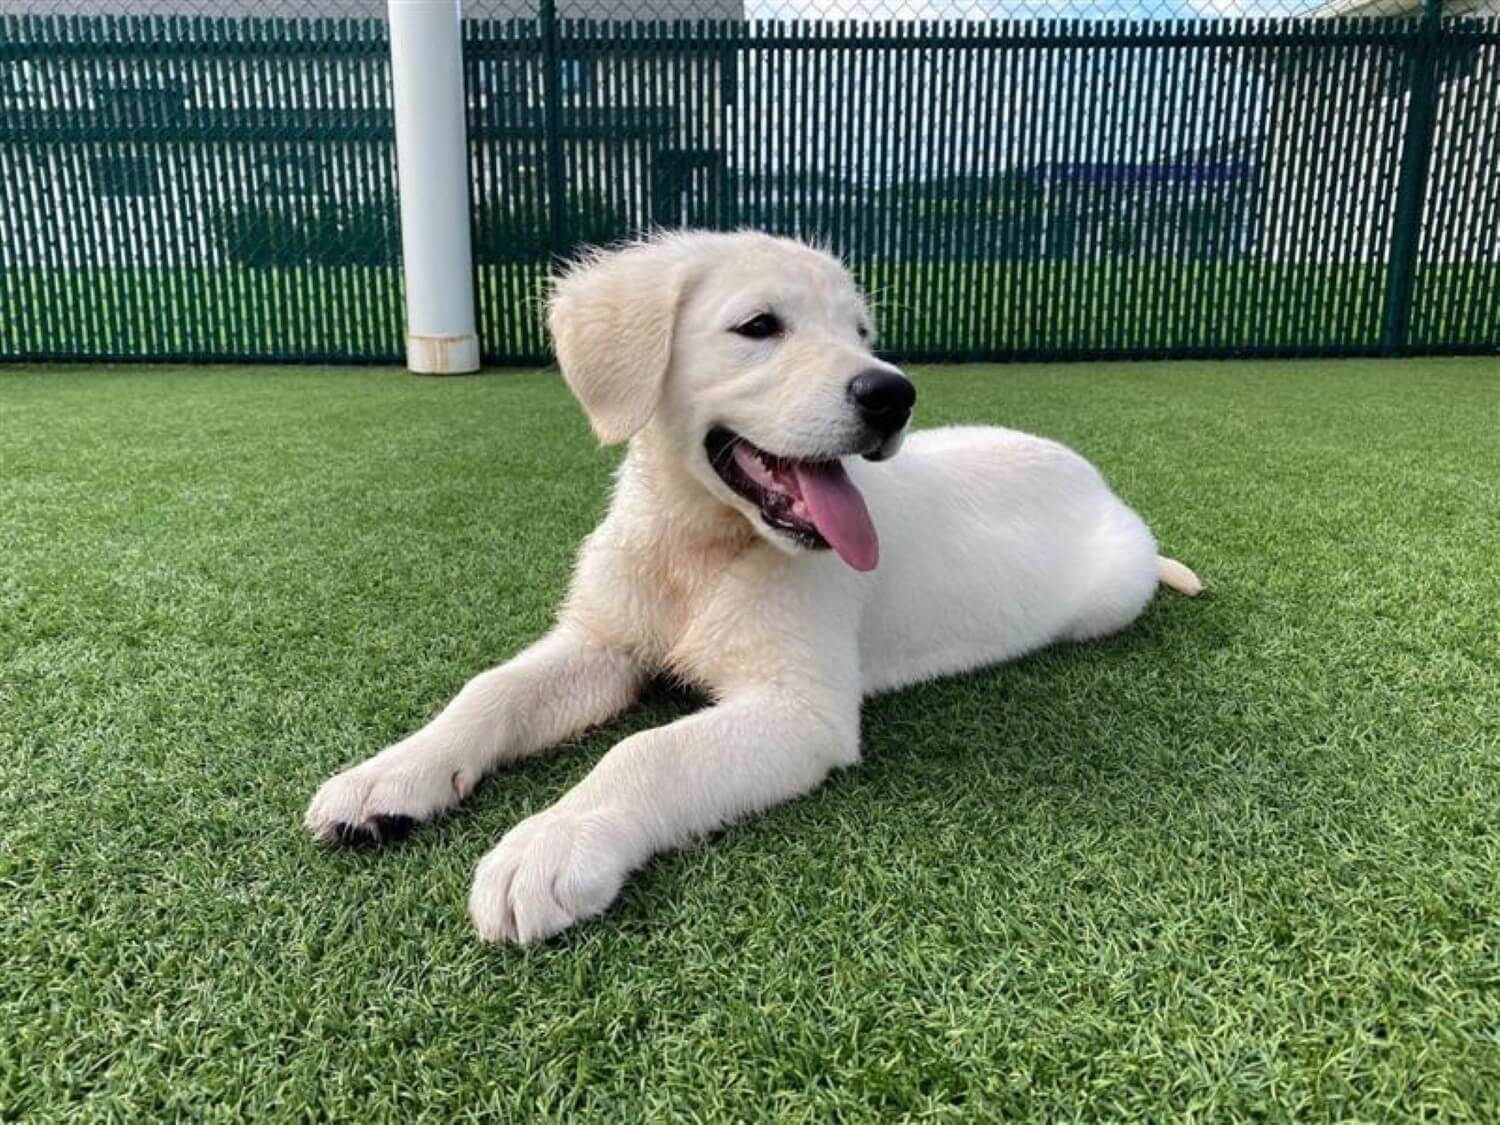 Retriever puppy relaxing on artificial grass